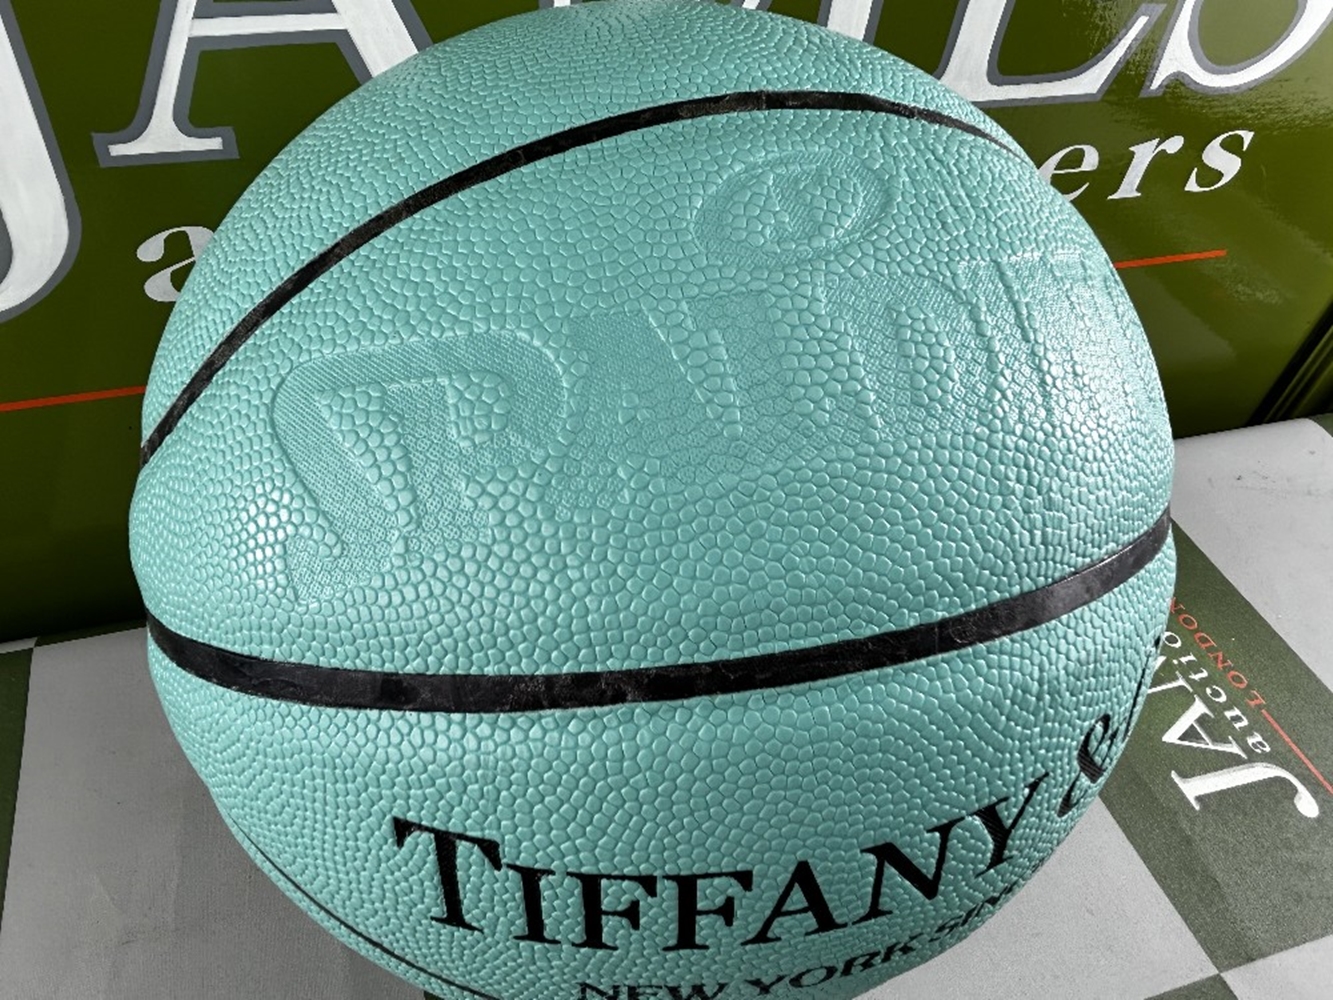 Tiffany & Co Full Size Basketball-Size 7 Unused Example - Image 4 of 4